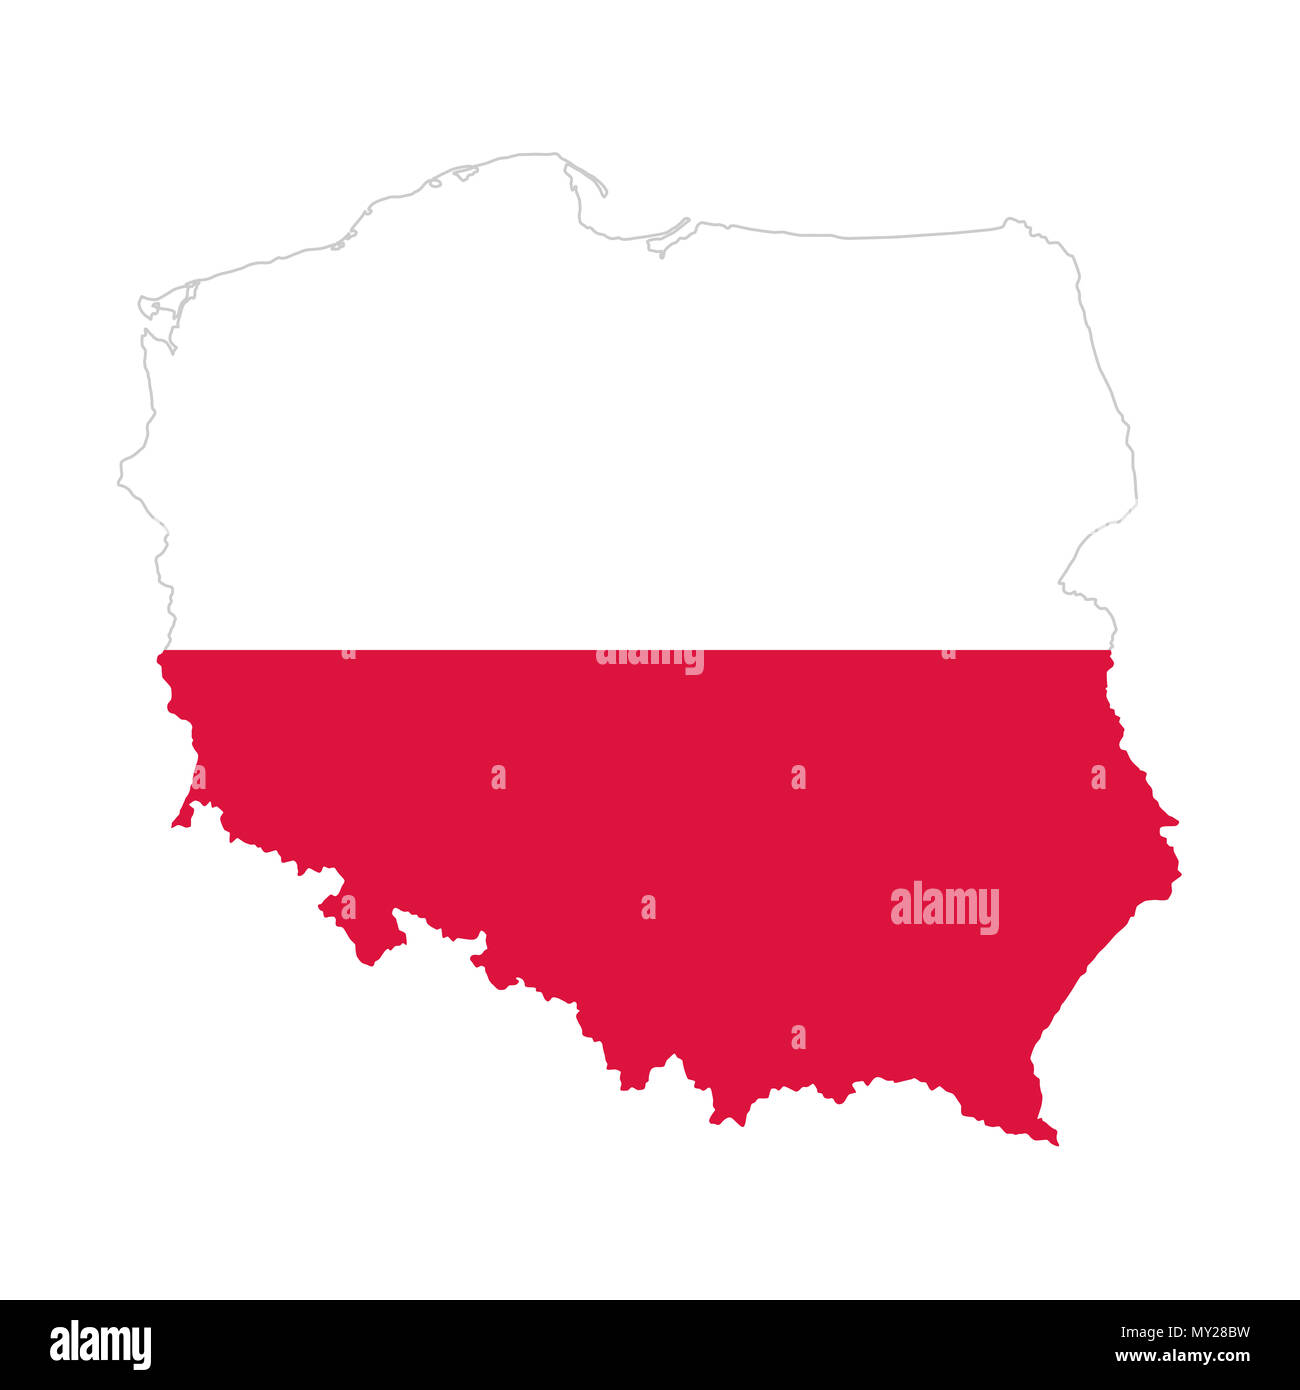 Pabellón de Polonia en la silueta del país. Bicolor. Dos bandas horizontales de igual ancho, blanco y rojo, en el esquema de la República de Polonia. Foto de stock